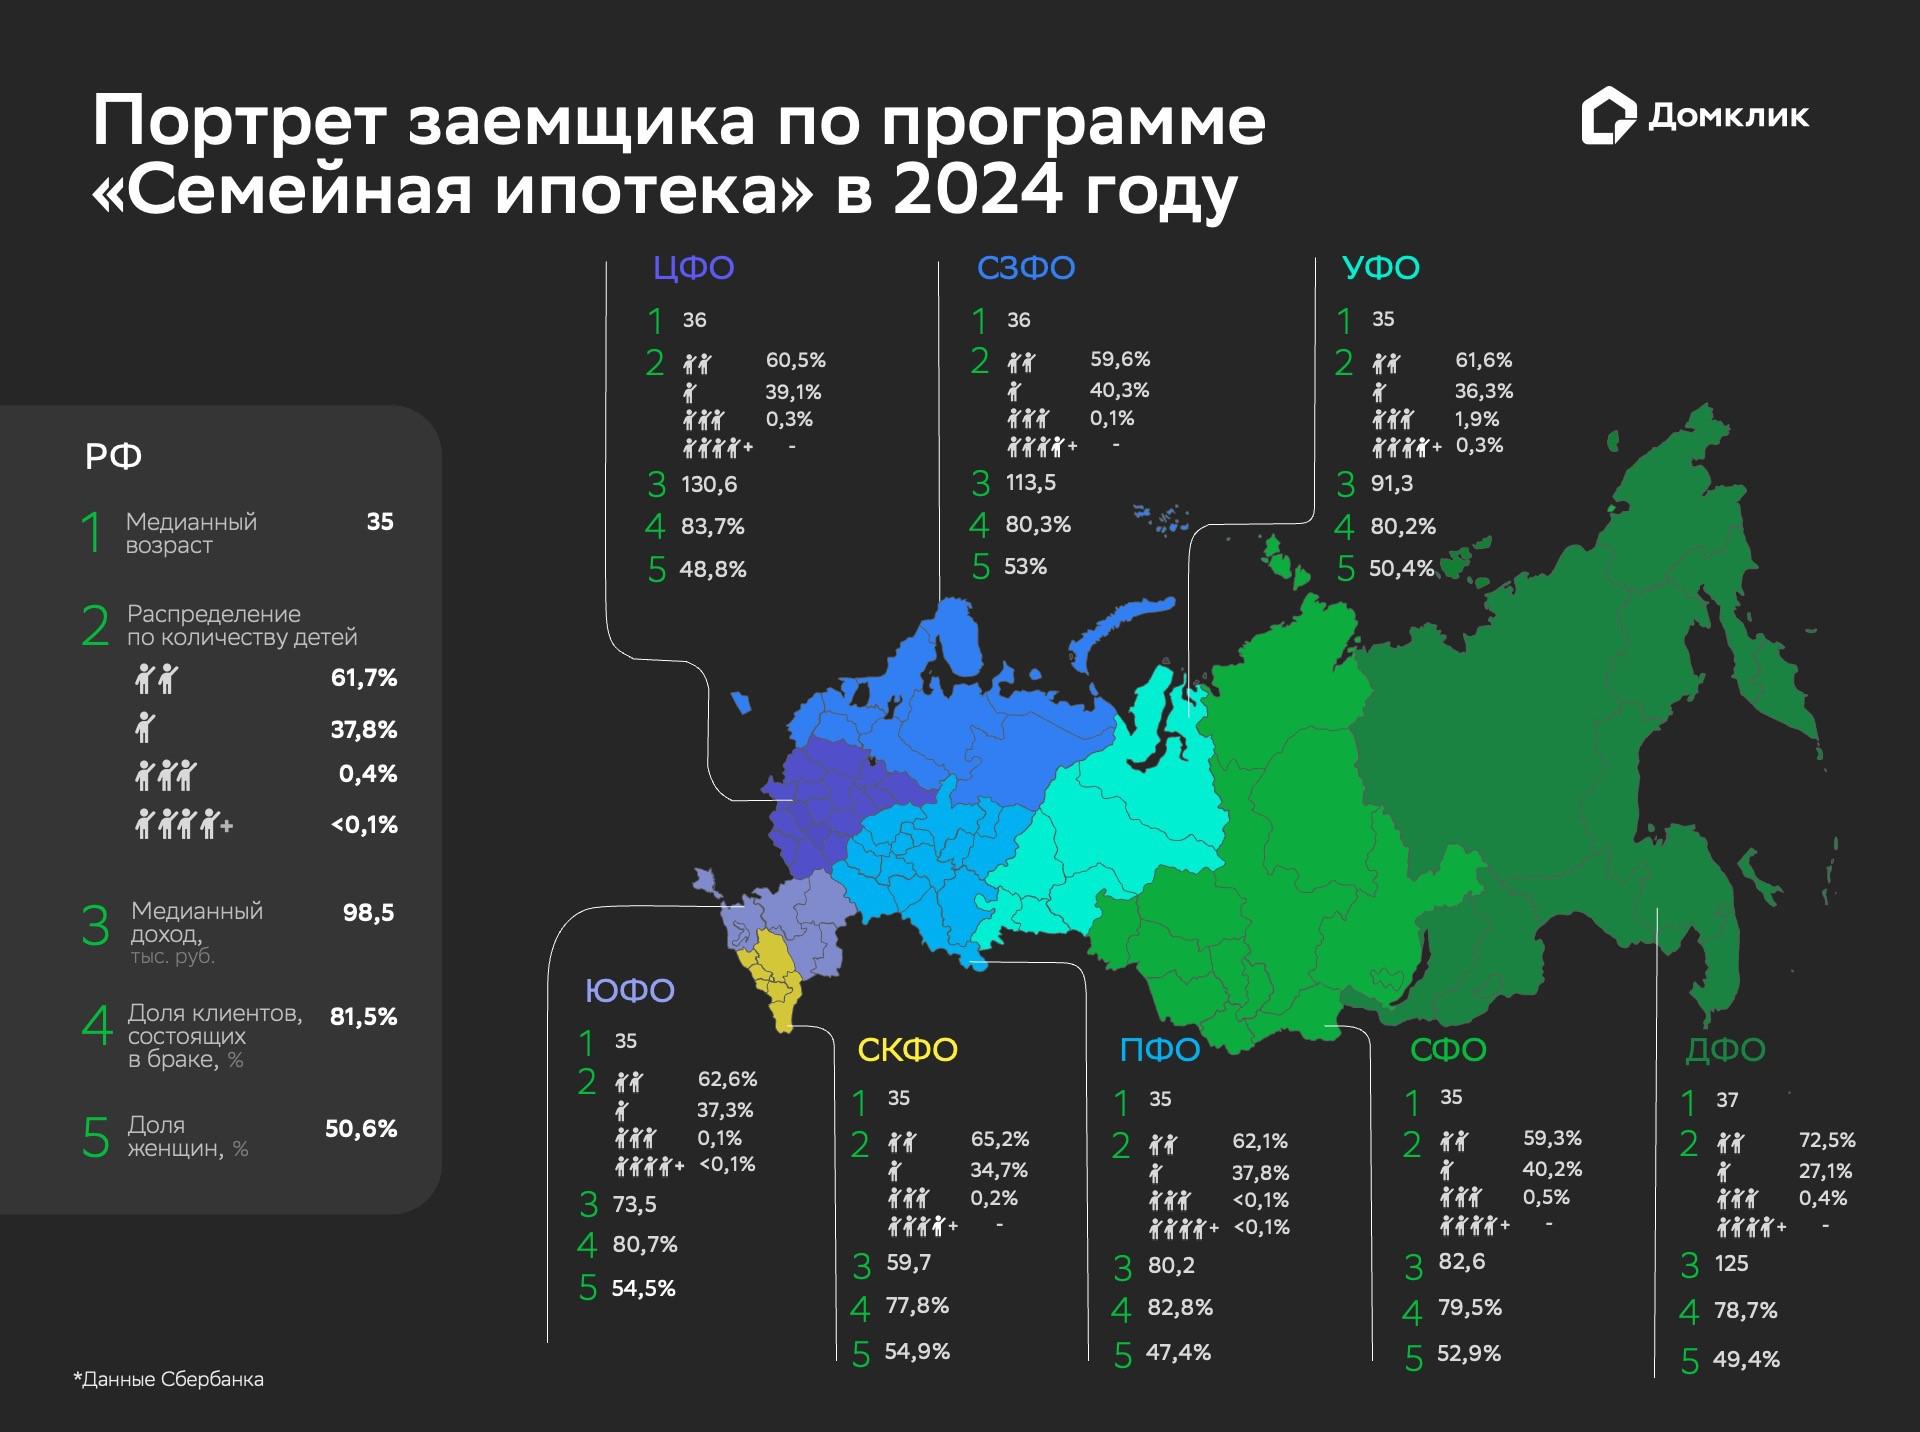 Средний возраст заемщика по семейной ипотеке в России составляет 35 лет